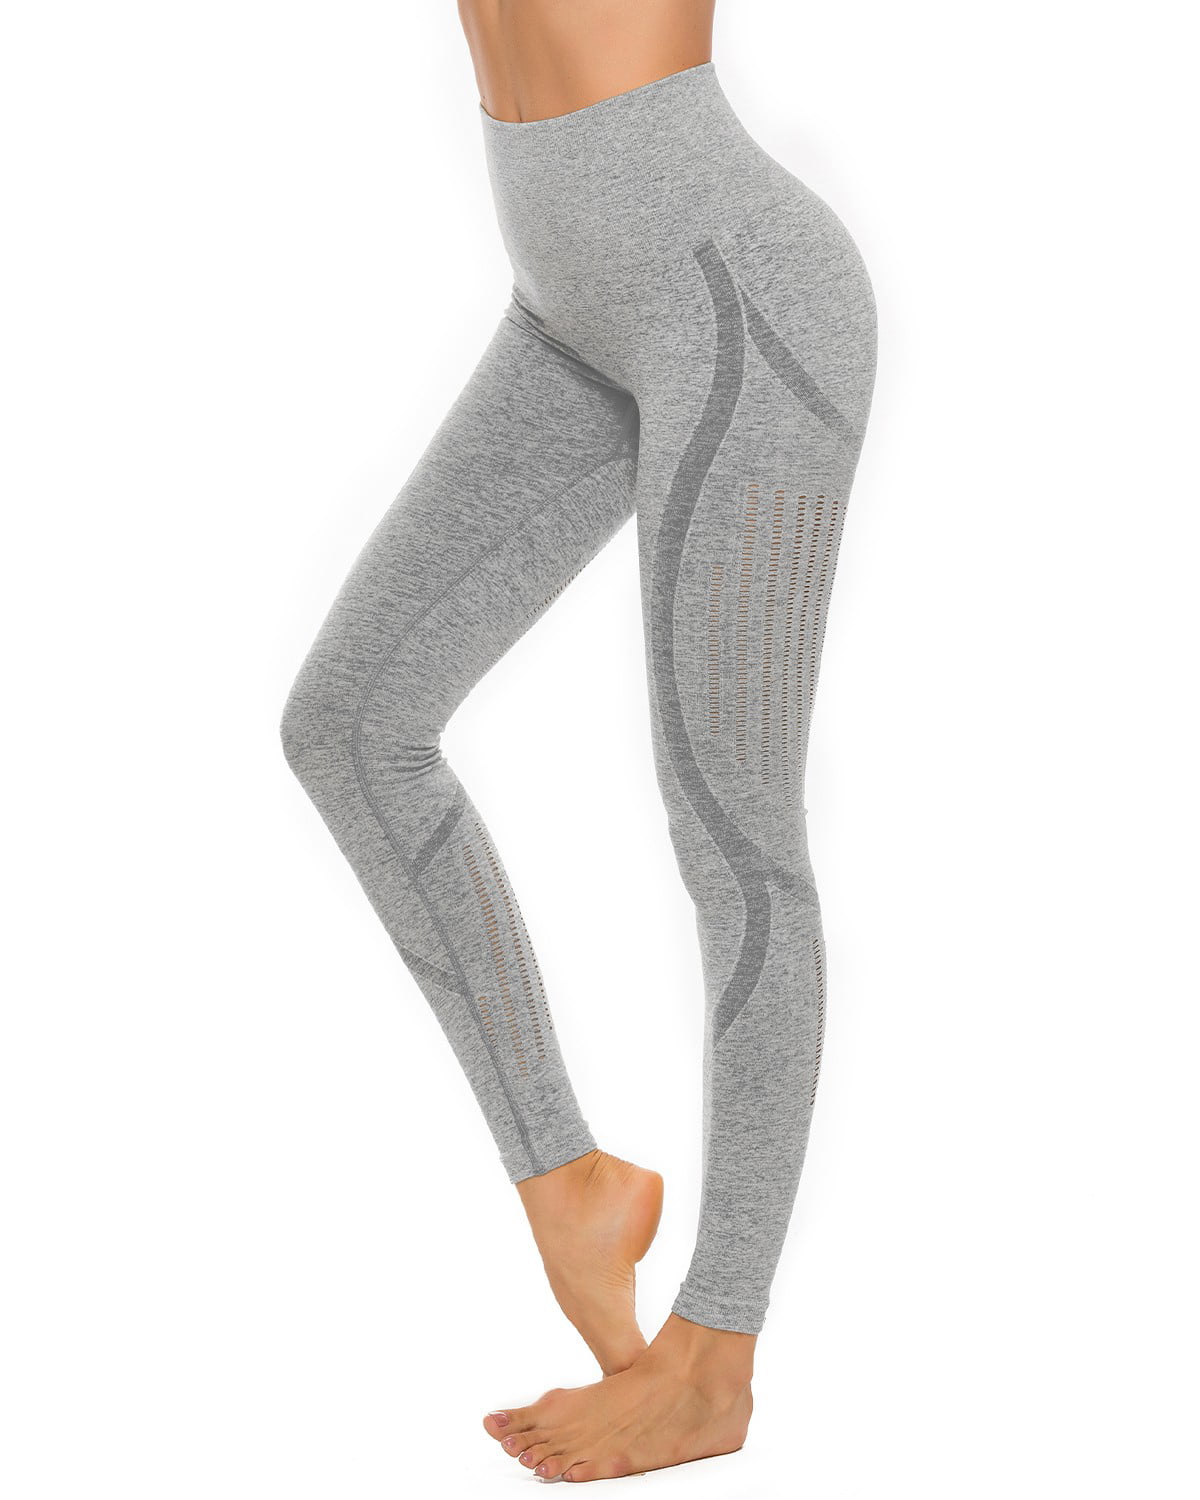 SEASUM Women's High Waist Yoga Pants Hollow Out Seamless Workout ...